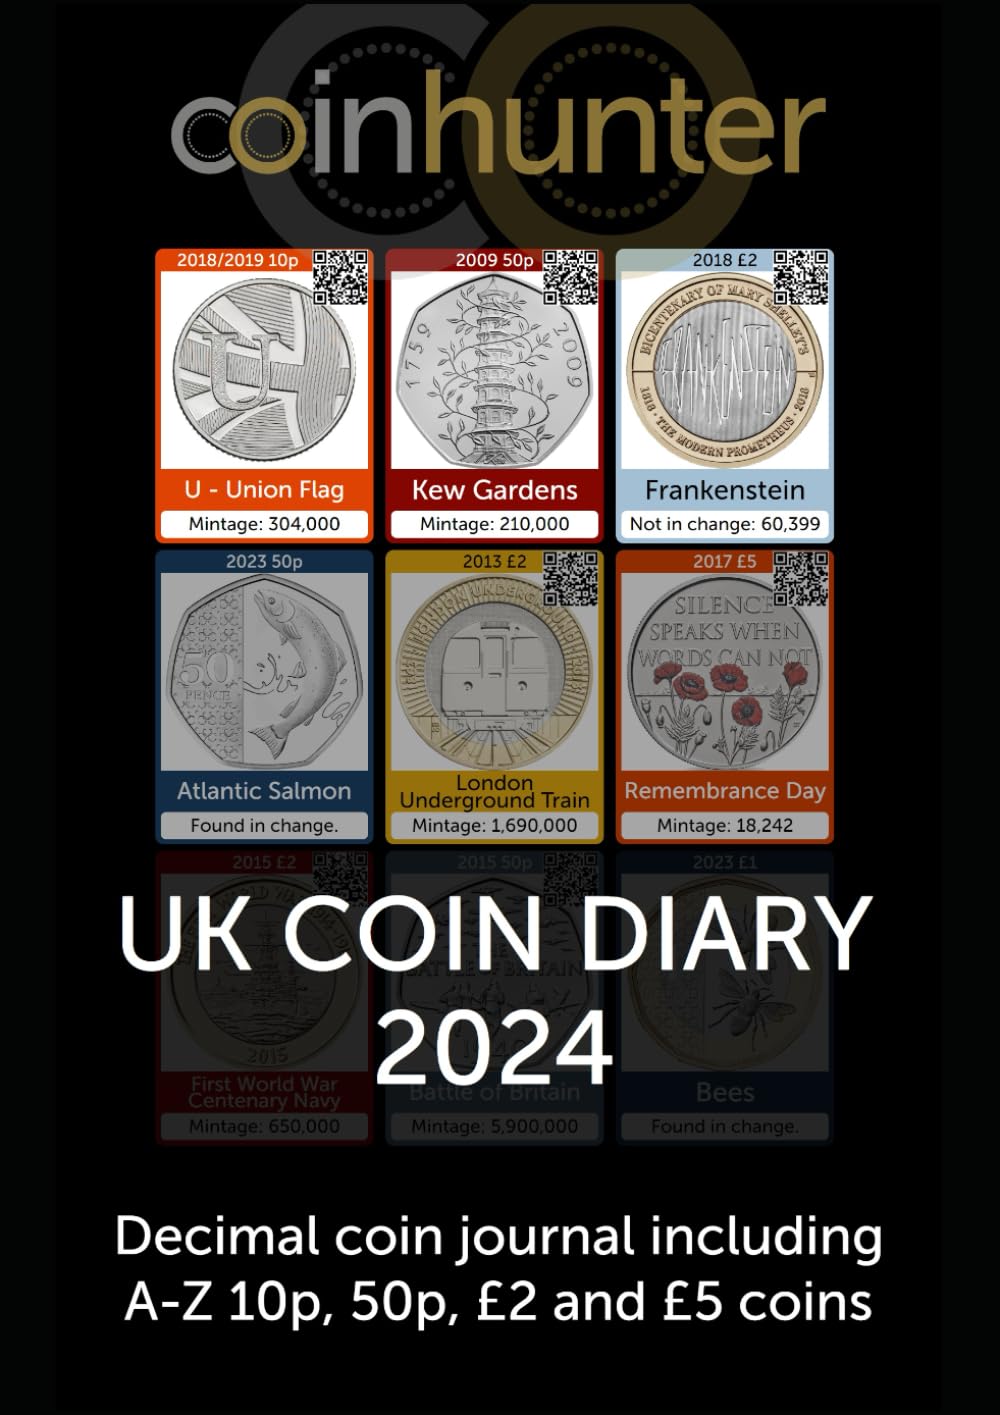 Larger: UK COIN DIARY 2024